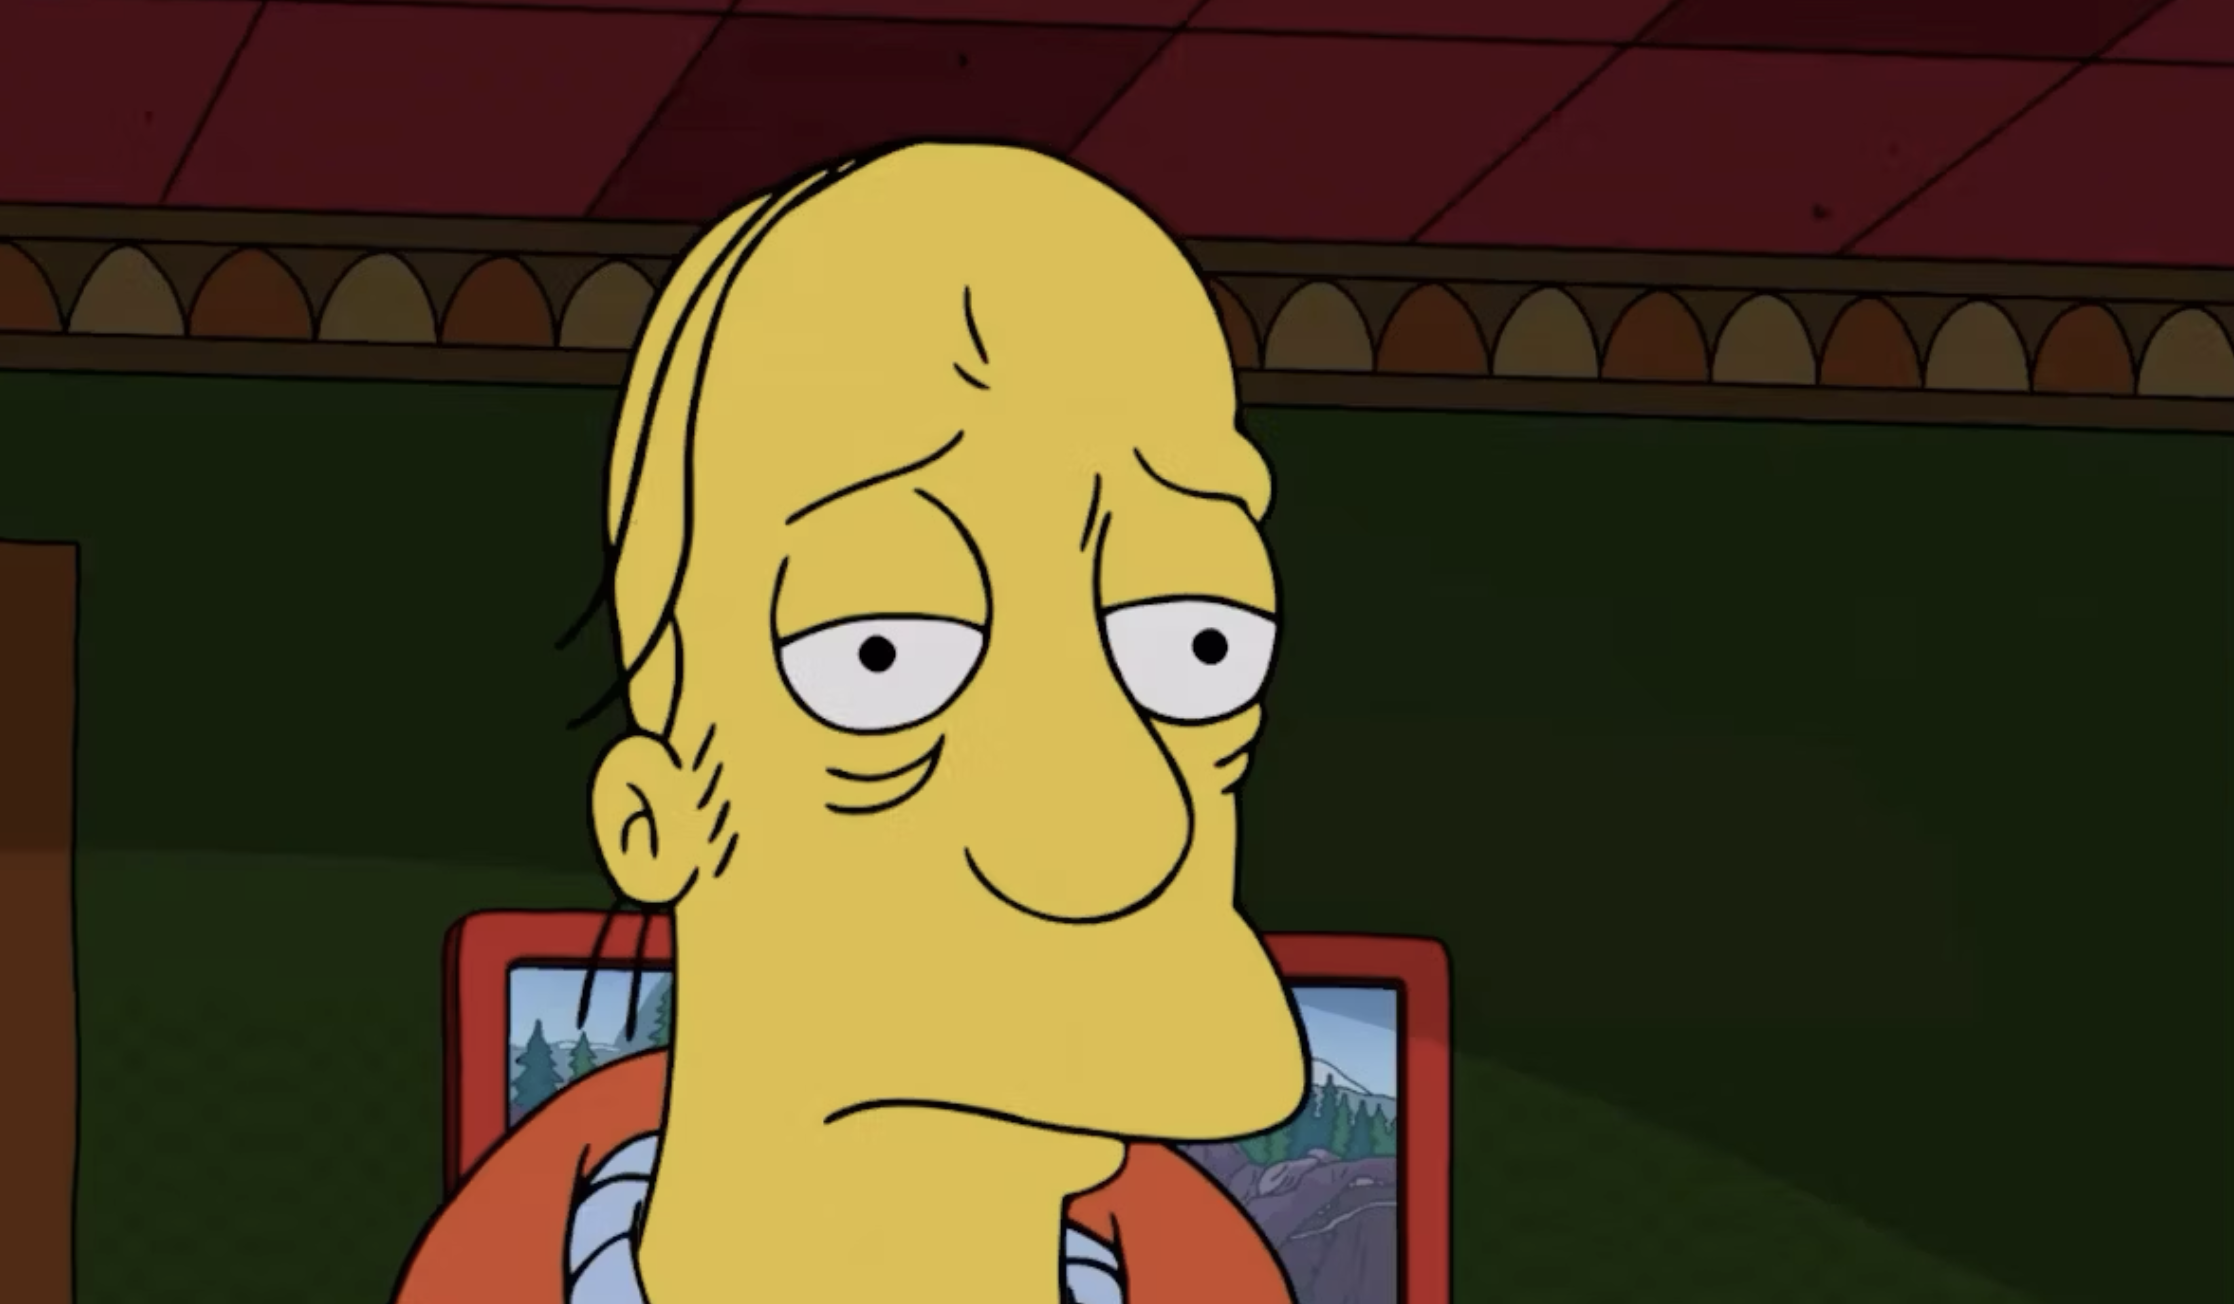 Le producteur des "Simpsons" s'explique sur la mort surprise de Larry après les réactions des fans